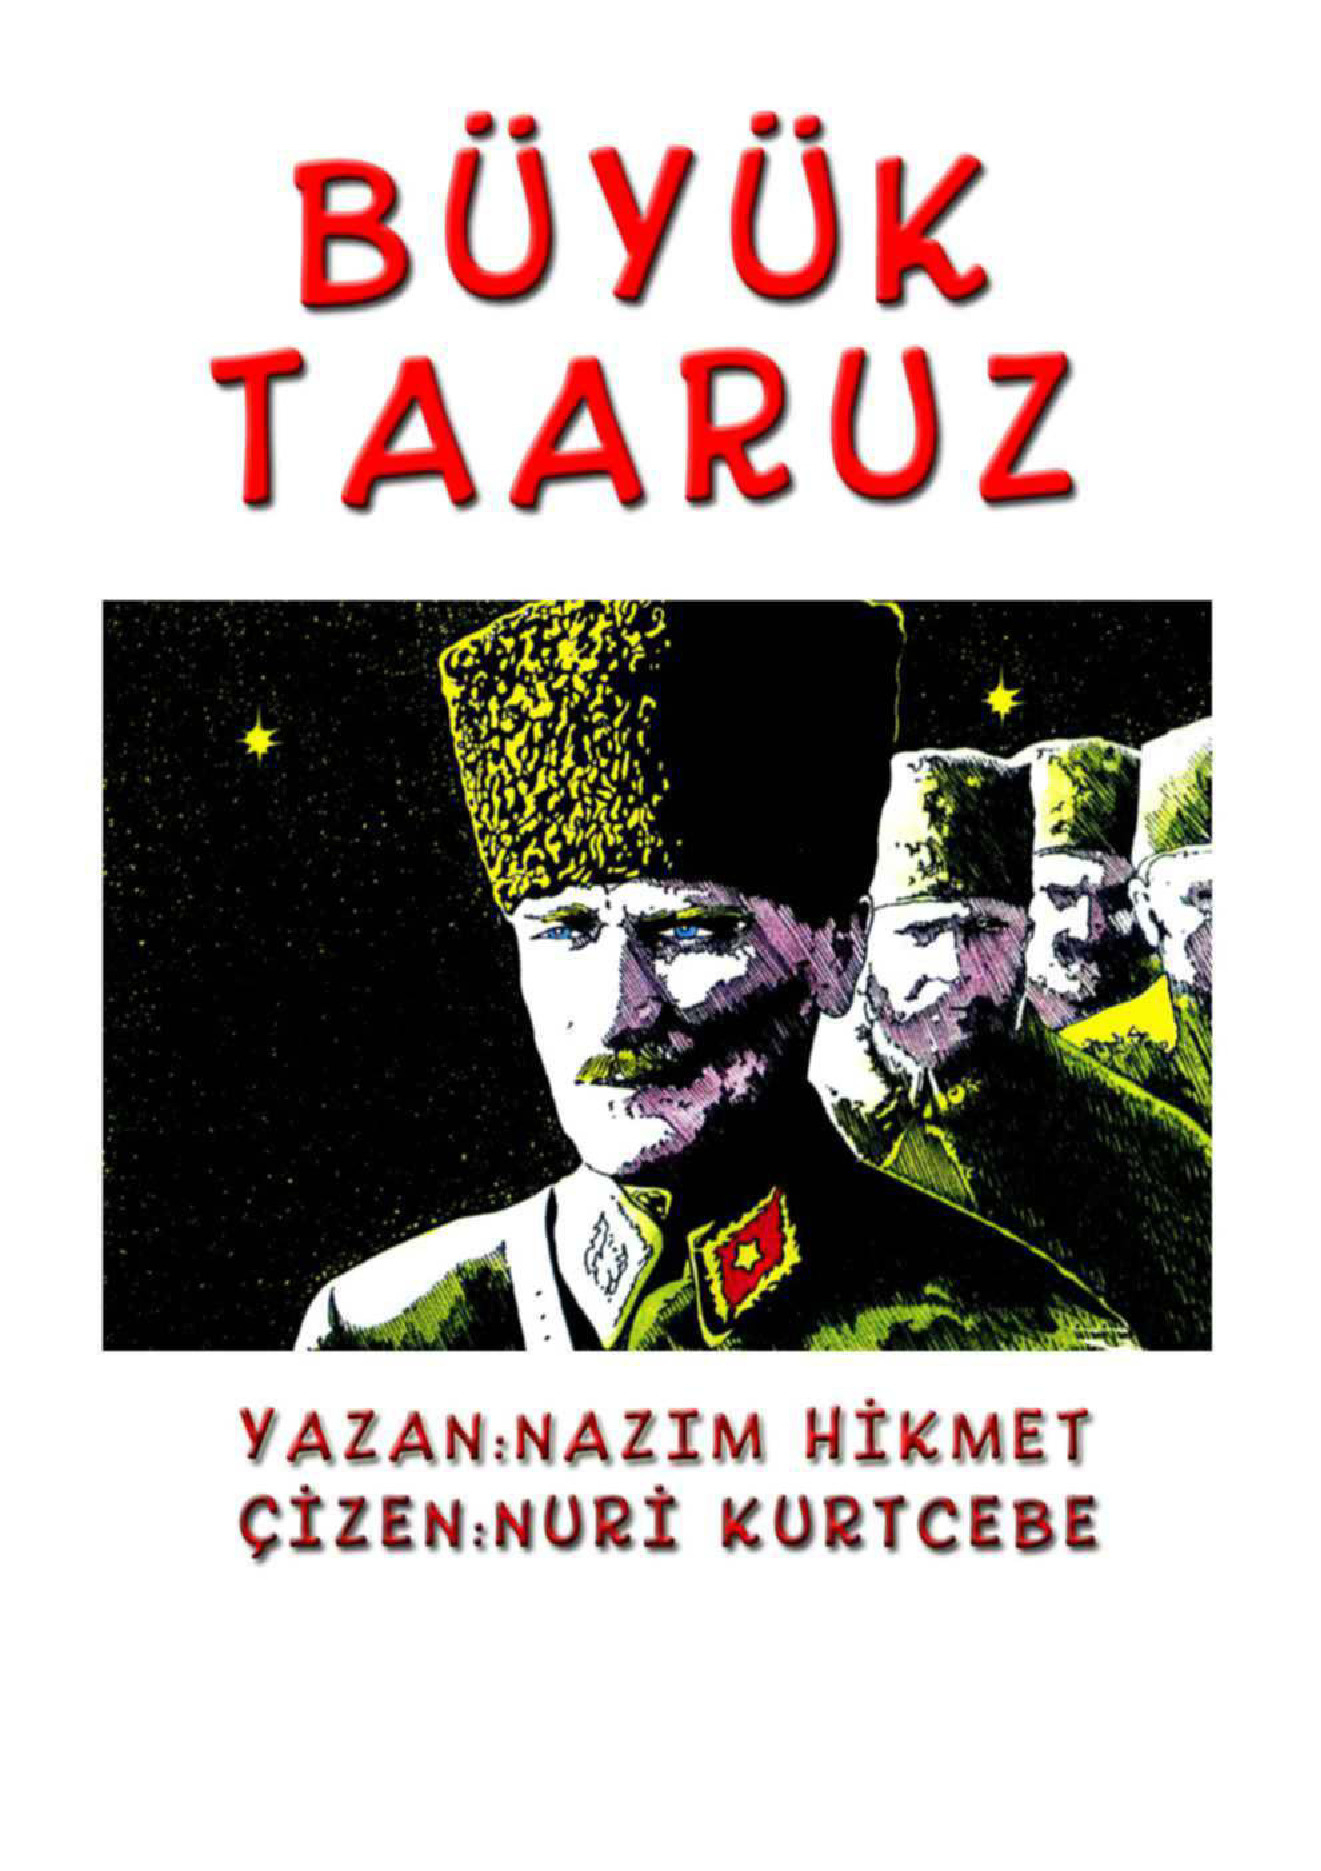 Büyük Teeruz (Çizgi Ruman)-Nazim Hikmet-Çizen-Nuri Qurtcebe-72s